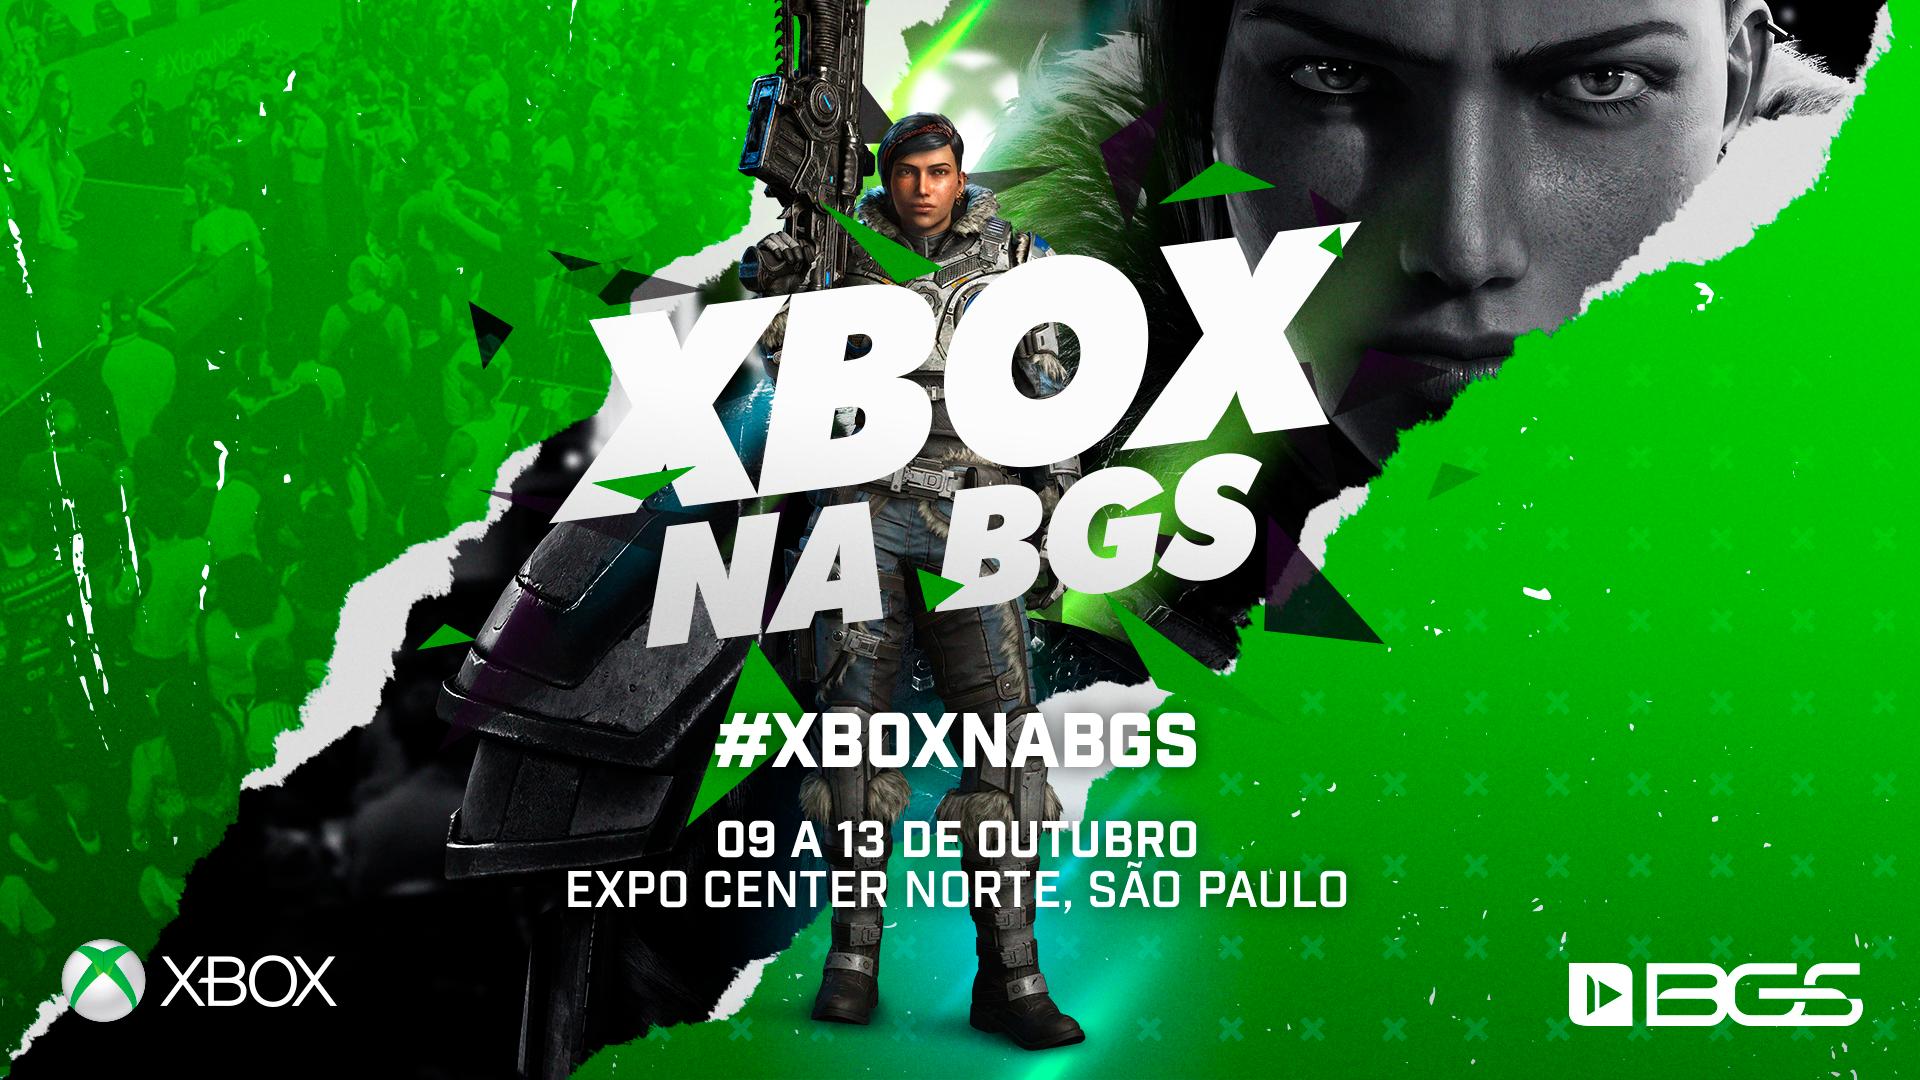 Xbox confirmado na Brasil Game Show 2019